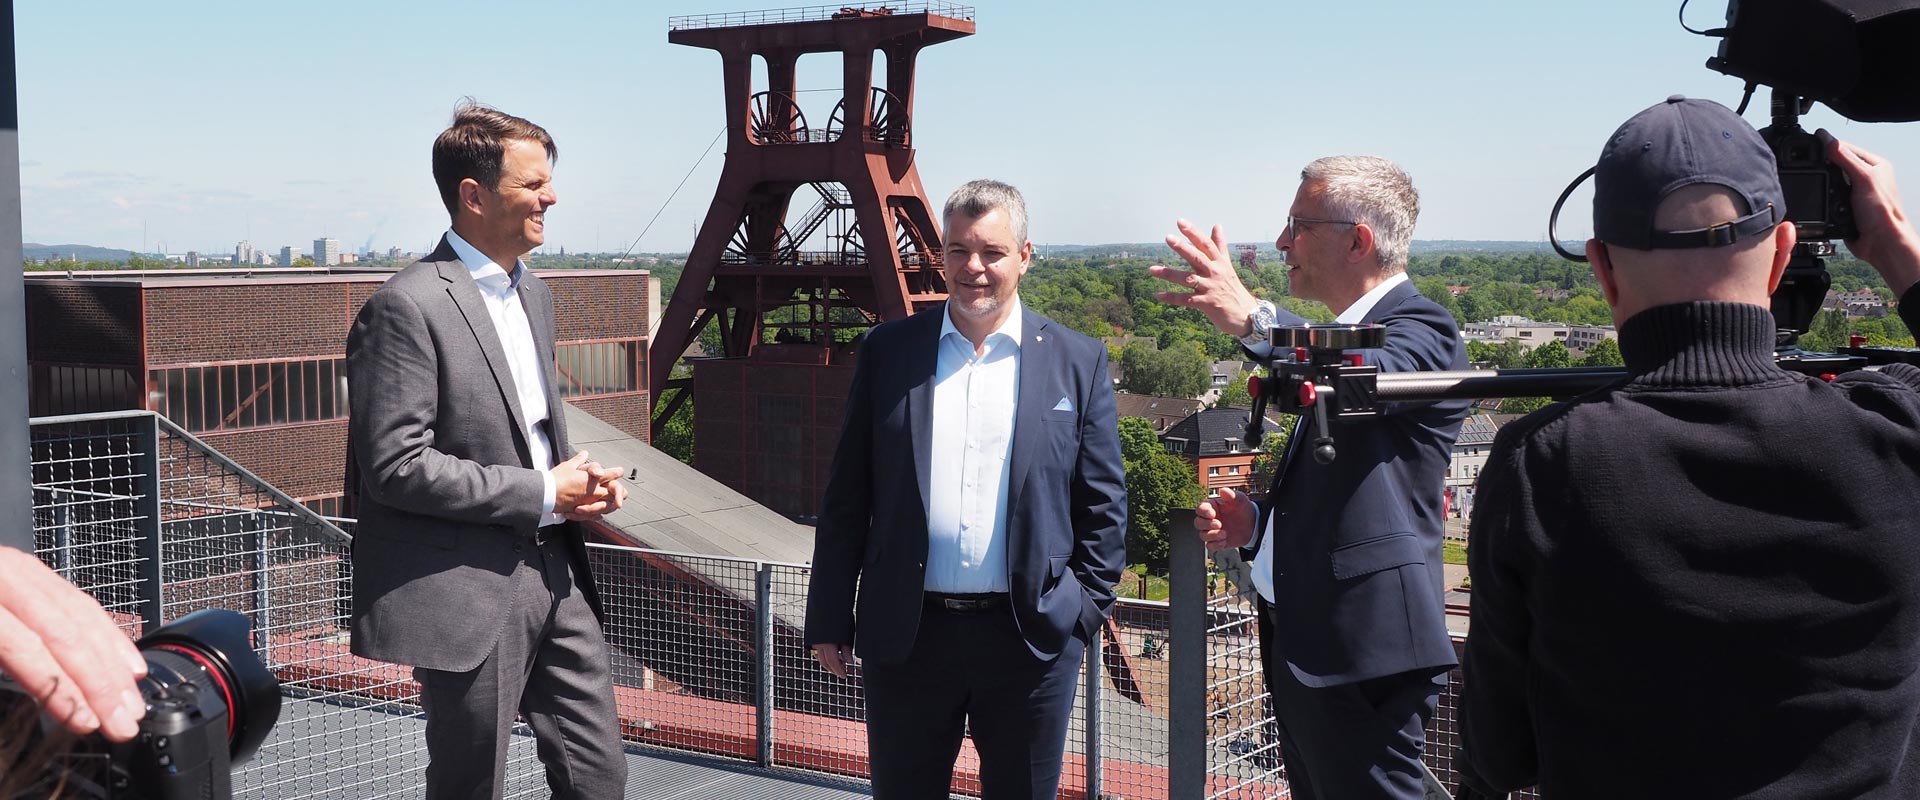 Die Vorstandsvorsitzenden Herr Lünser und Herr Castrillo bei dem Videodreh auf der Aussichtsplattform der Zeche Zollverein